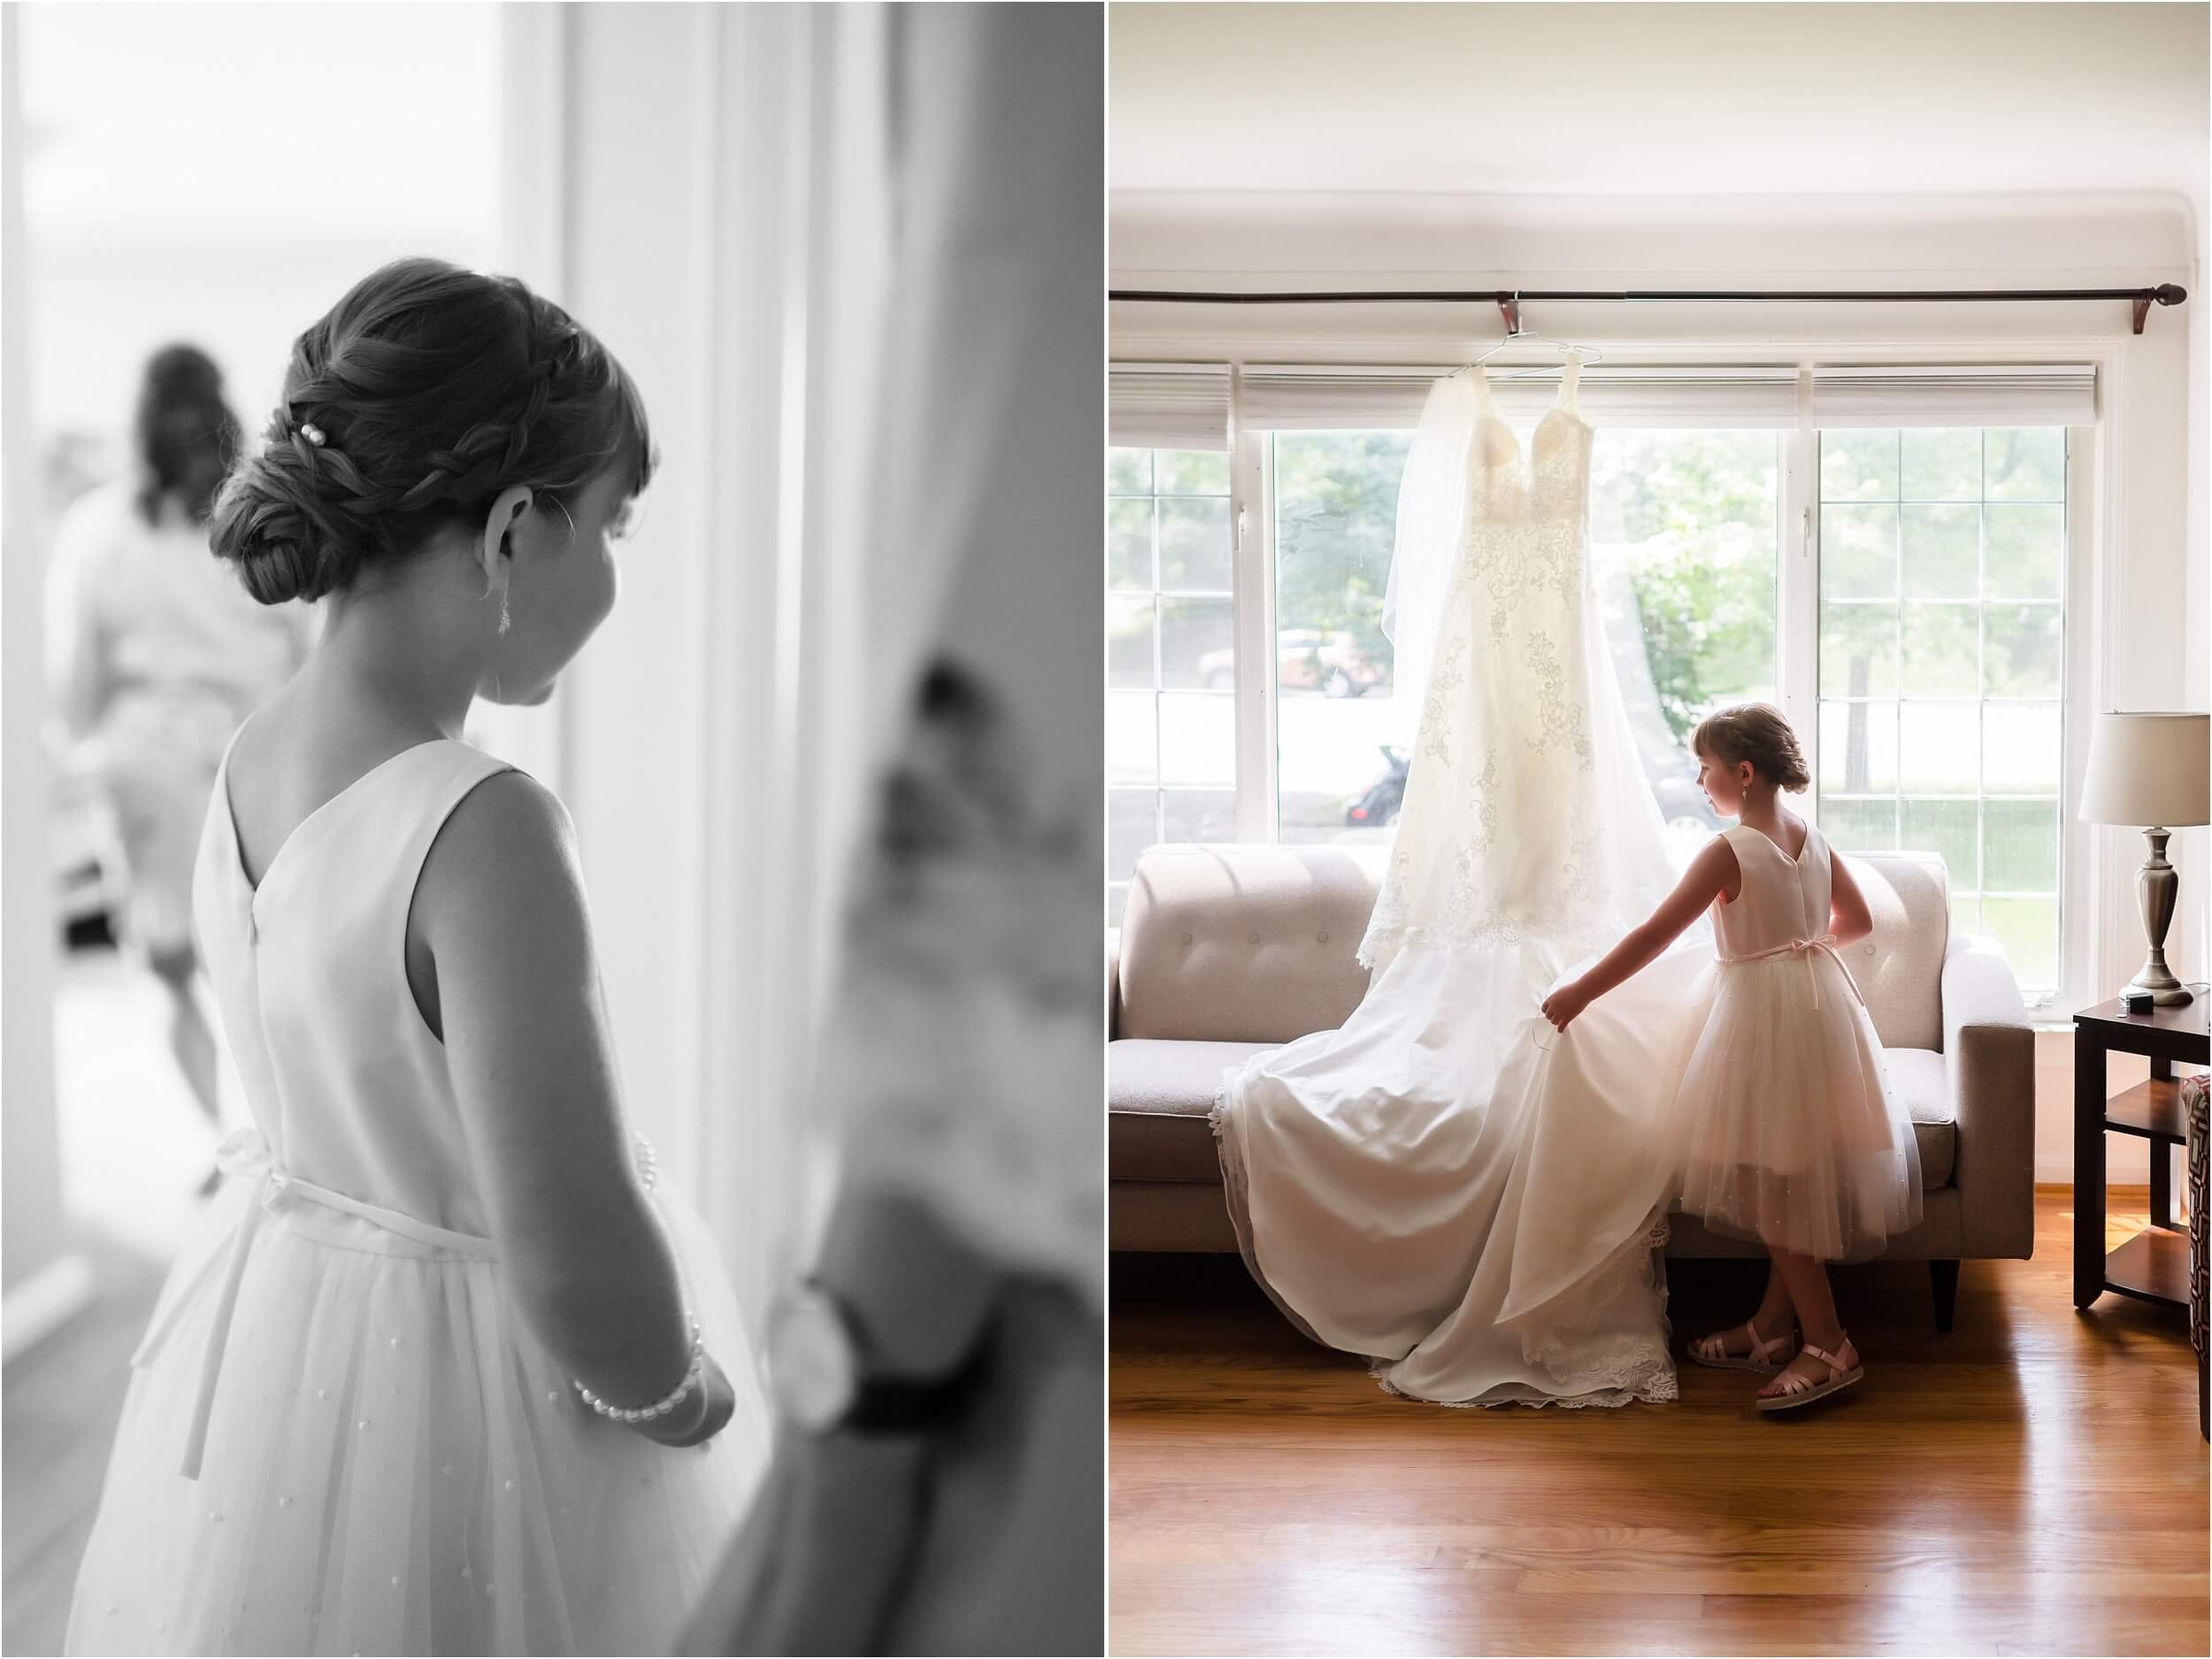  A flower girl fluffs a wedding dress hanging in a window.  